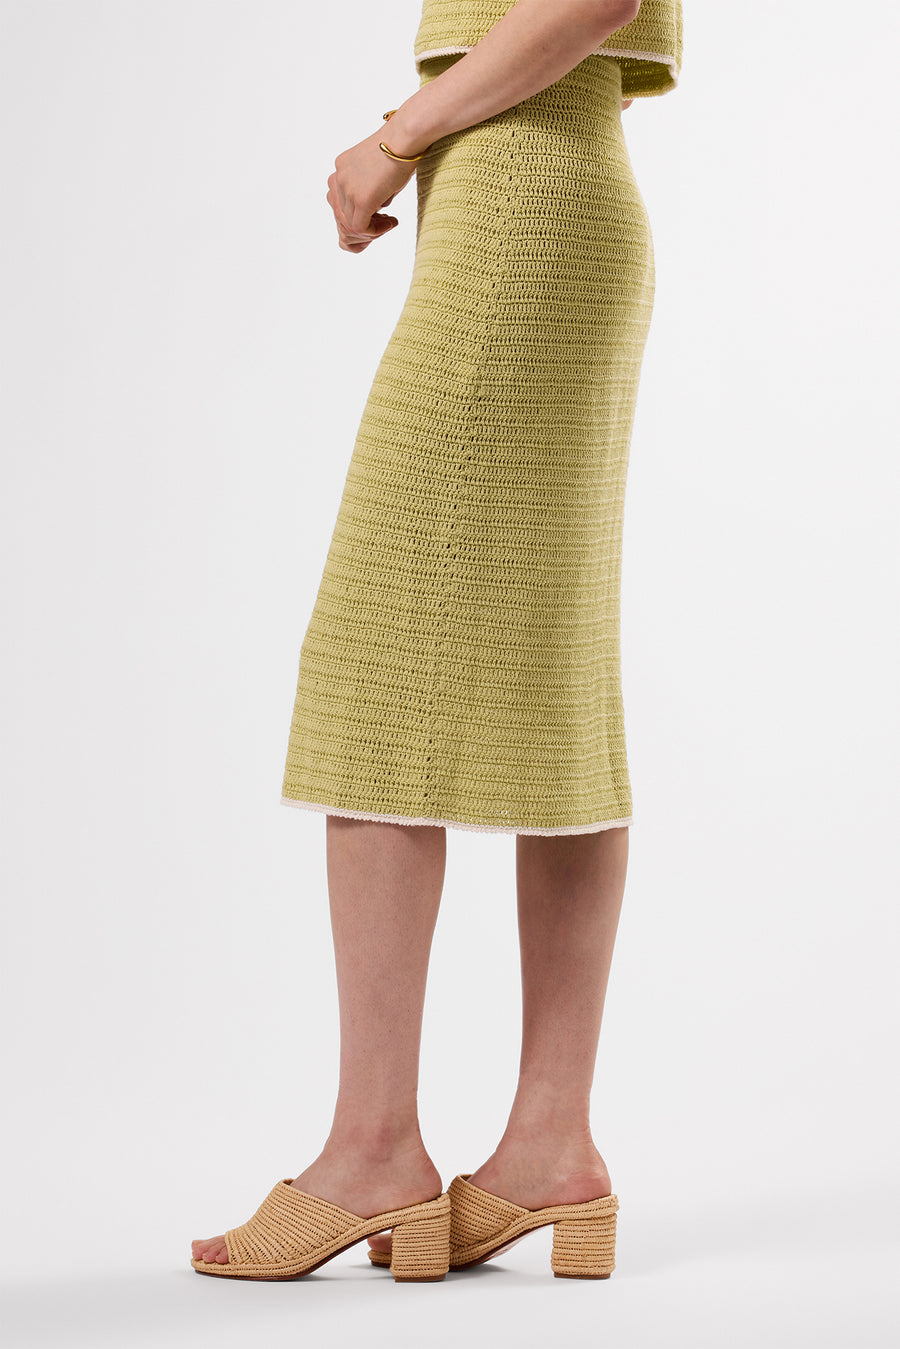 Meli Crochet Skirt - Melon Ivory